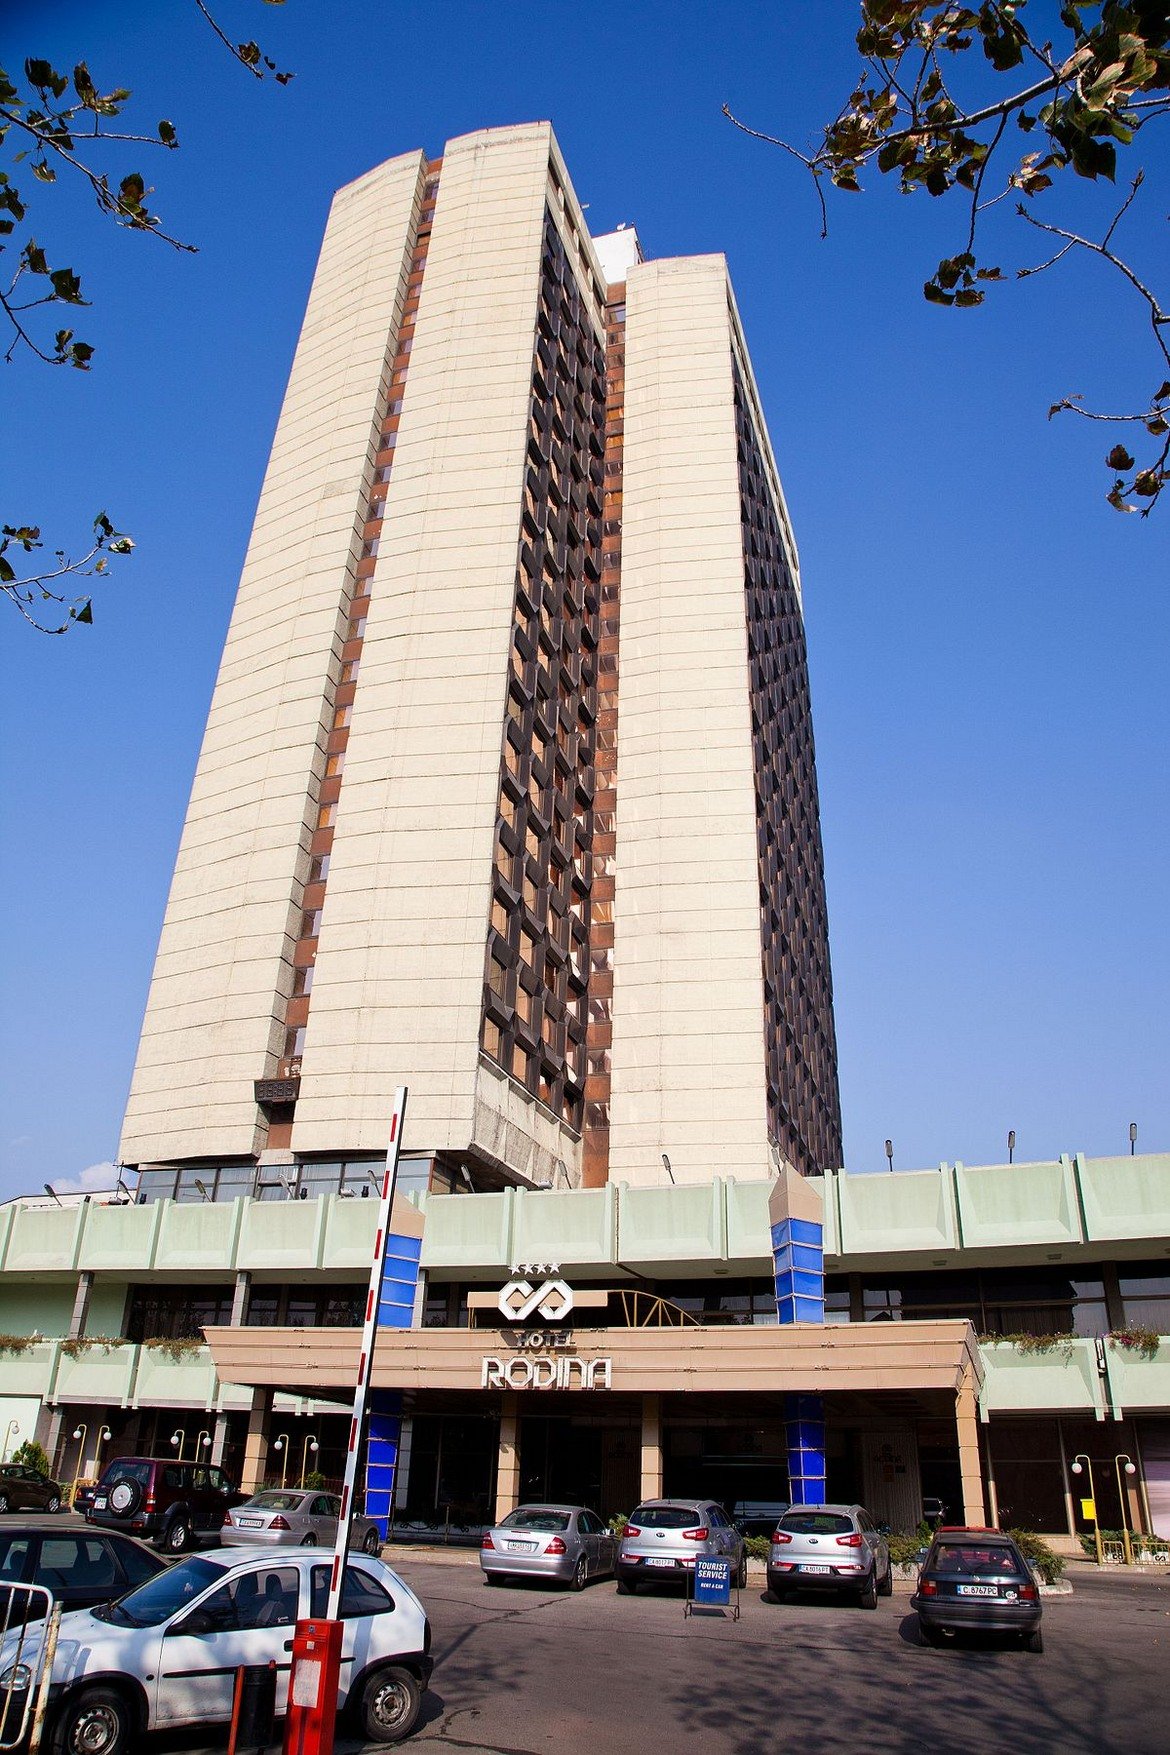 Хотел "Родина" - 104 метра, 25 етажа, завършен през 1981

Четиризвездният хотел е строен по социалистическо време в близост до площад "Руски паметник" в София и години наред беше най-високата сграда в страната (като се изключат индустриалните комини на сгради и телевизионните кули). След дълги години търсене на инвеститор и сериозен упадък, заради необслужвани дългове, през 2014-а година "Родина" беше придобит от собственика на  "Дюни роял ризорт" Людмил Стойков срещу 25 млн. лв.
Снимка: Wikipedia